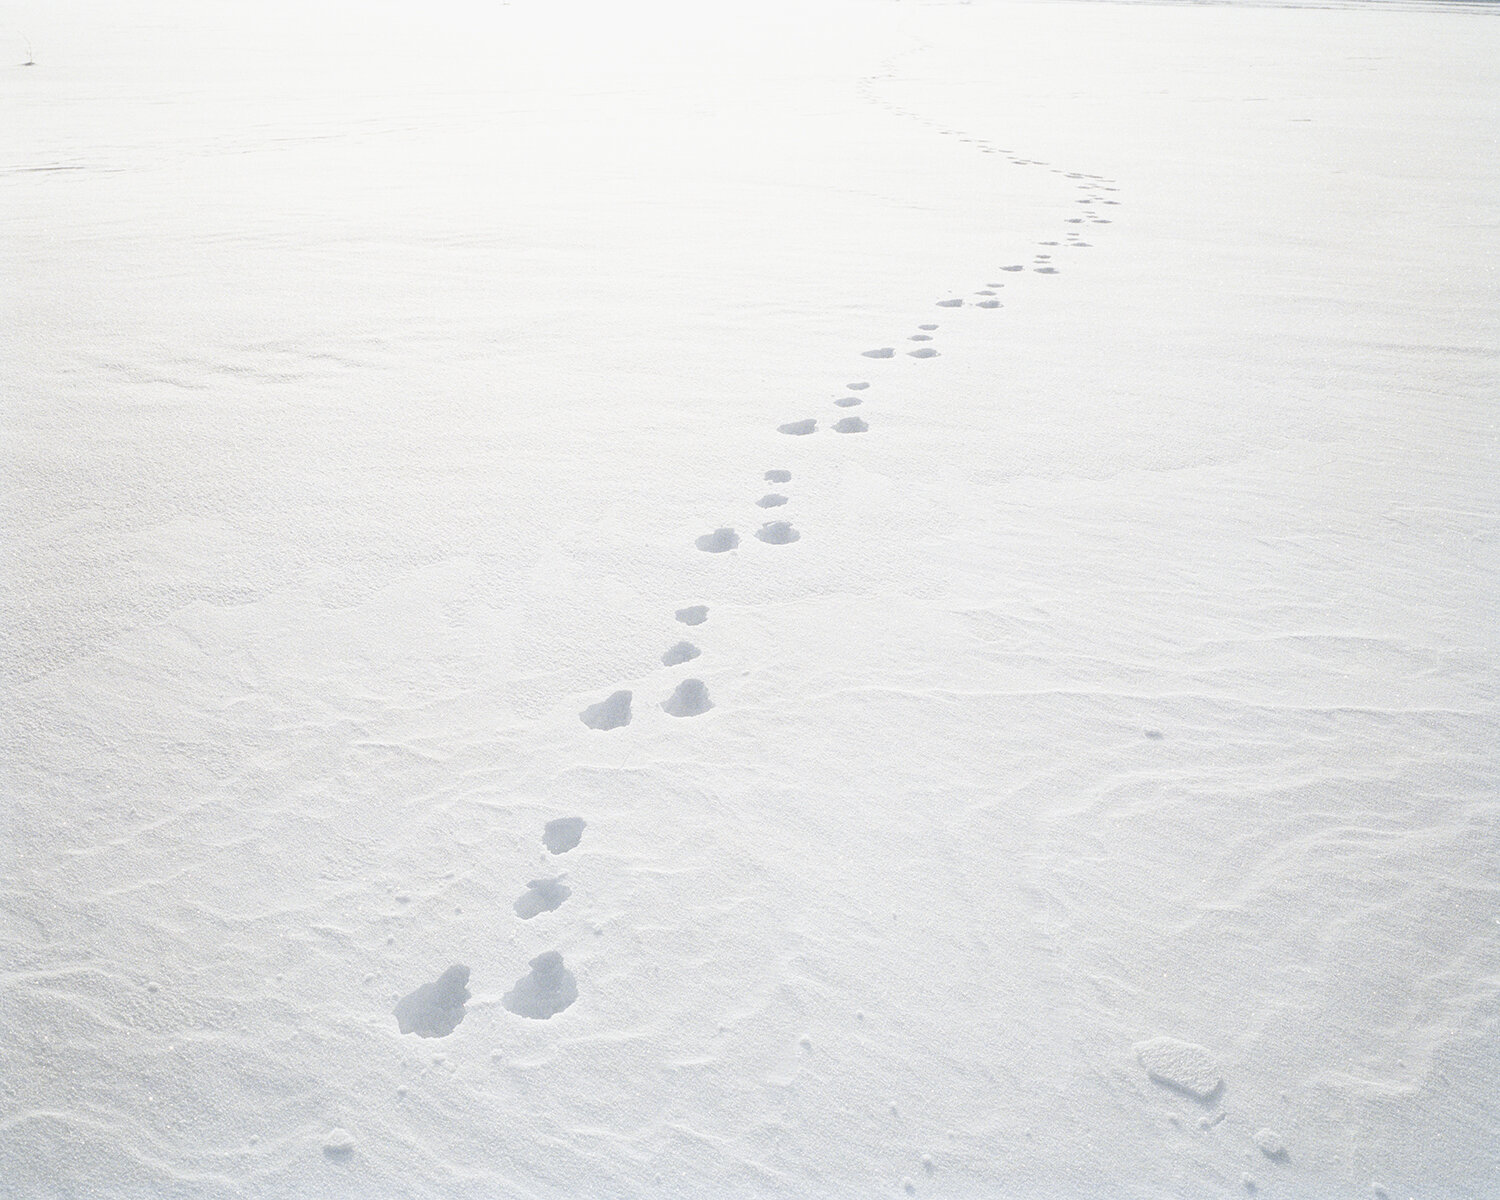  Hare tracks. Muonionjoki, Karesuando, Swedish-Finnish border, 2020. 